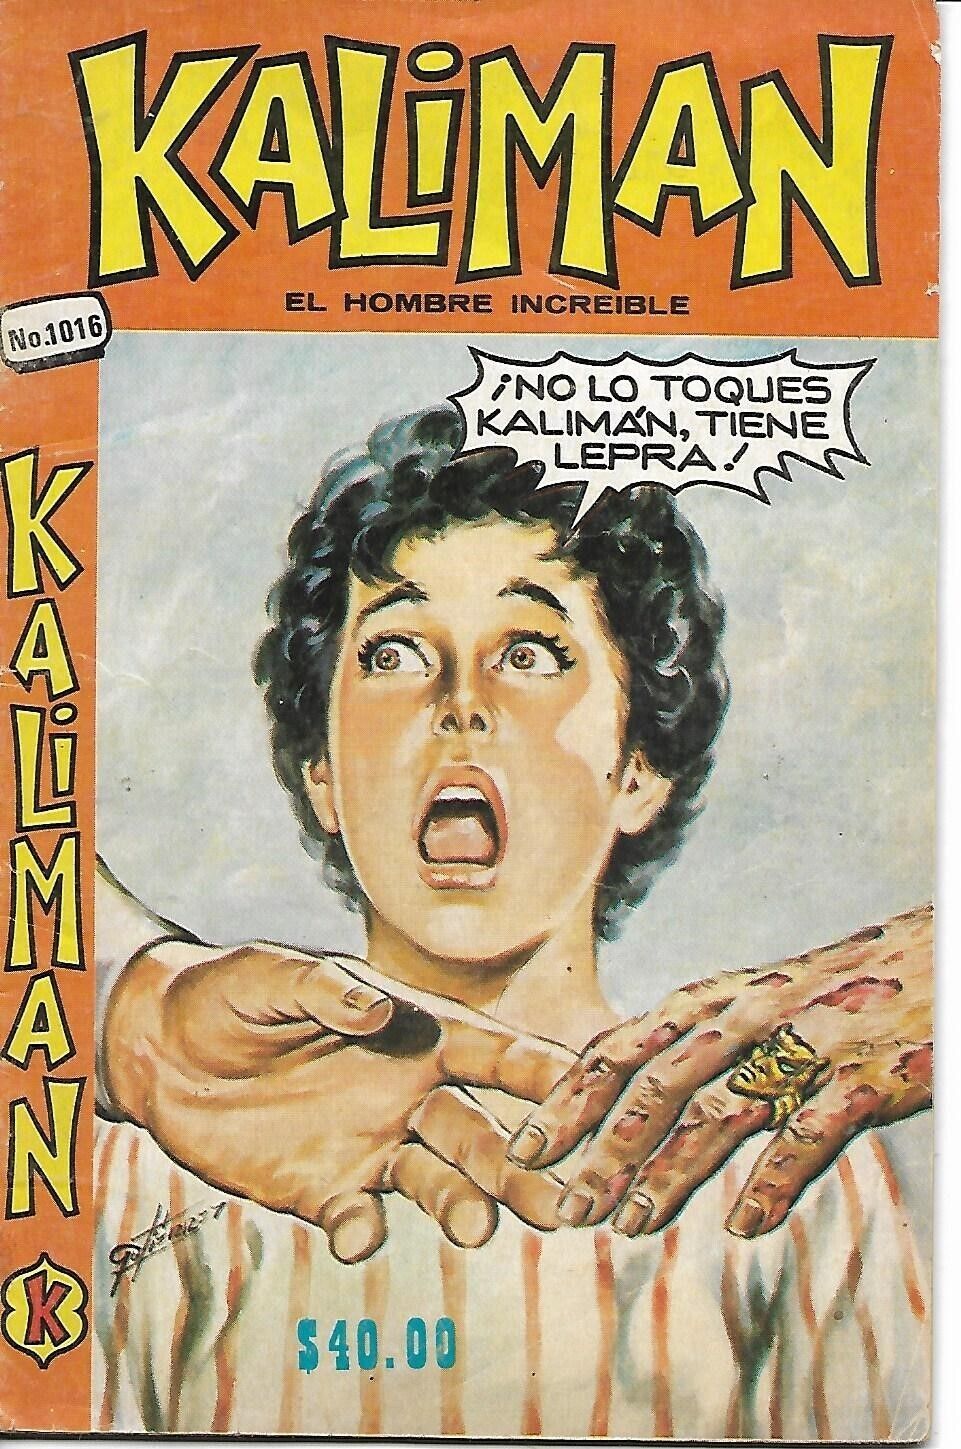 Kaliman El Hombre Increible #1016 - Mayo 17, 1985 - Mexico